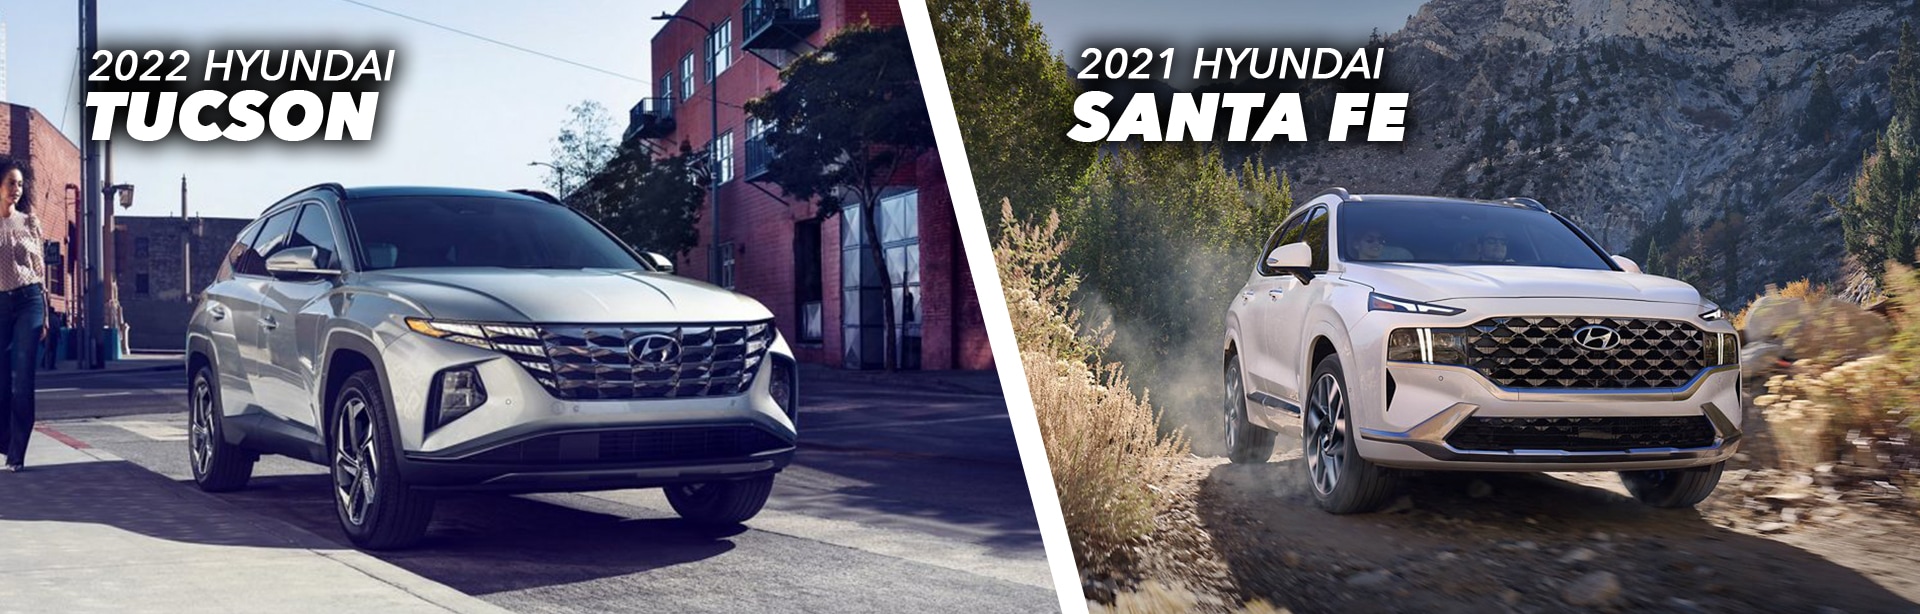 2022 Hyundai Tucson vs. 2021 Hyundai Santa Fe